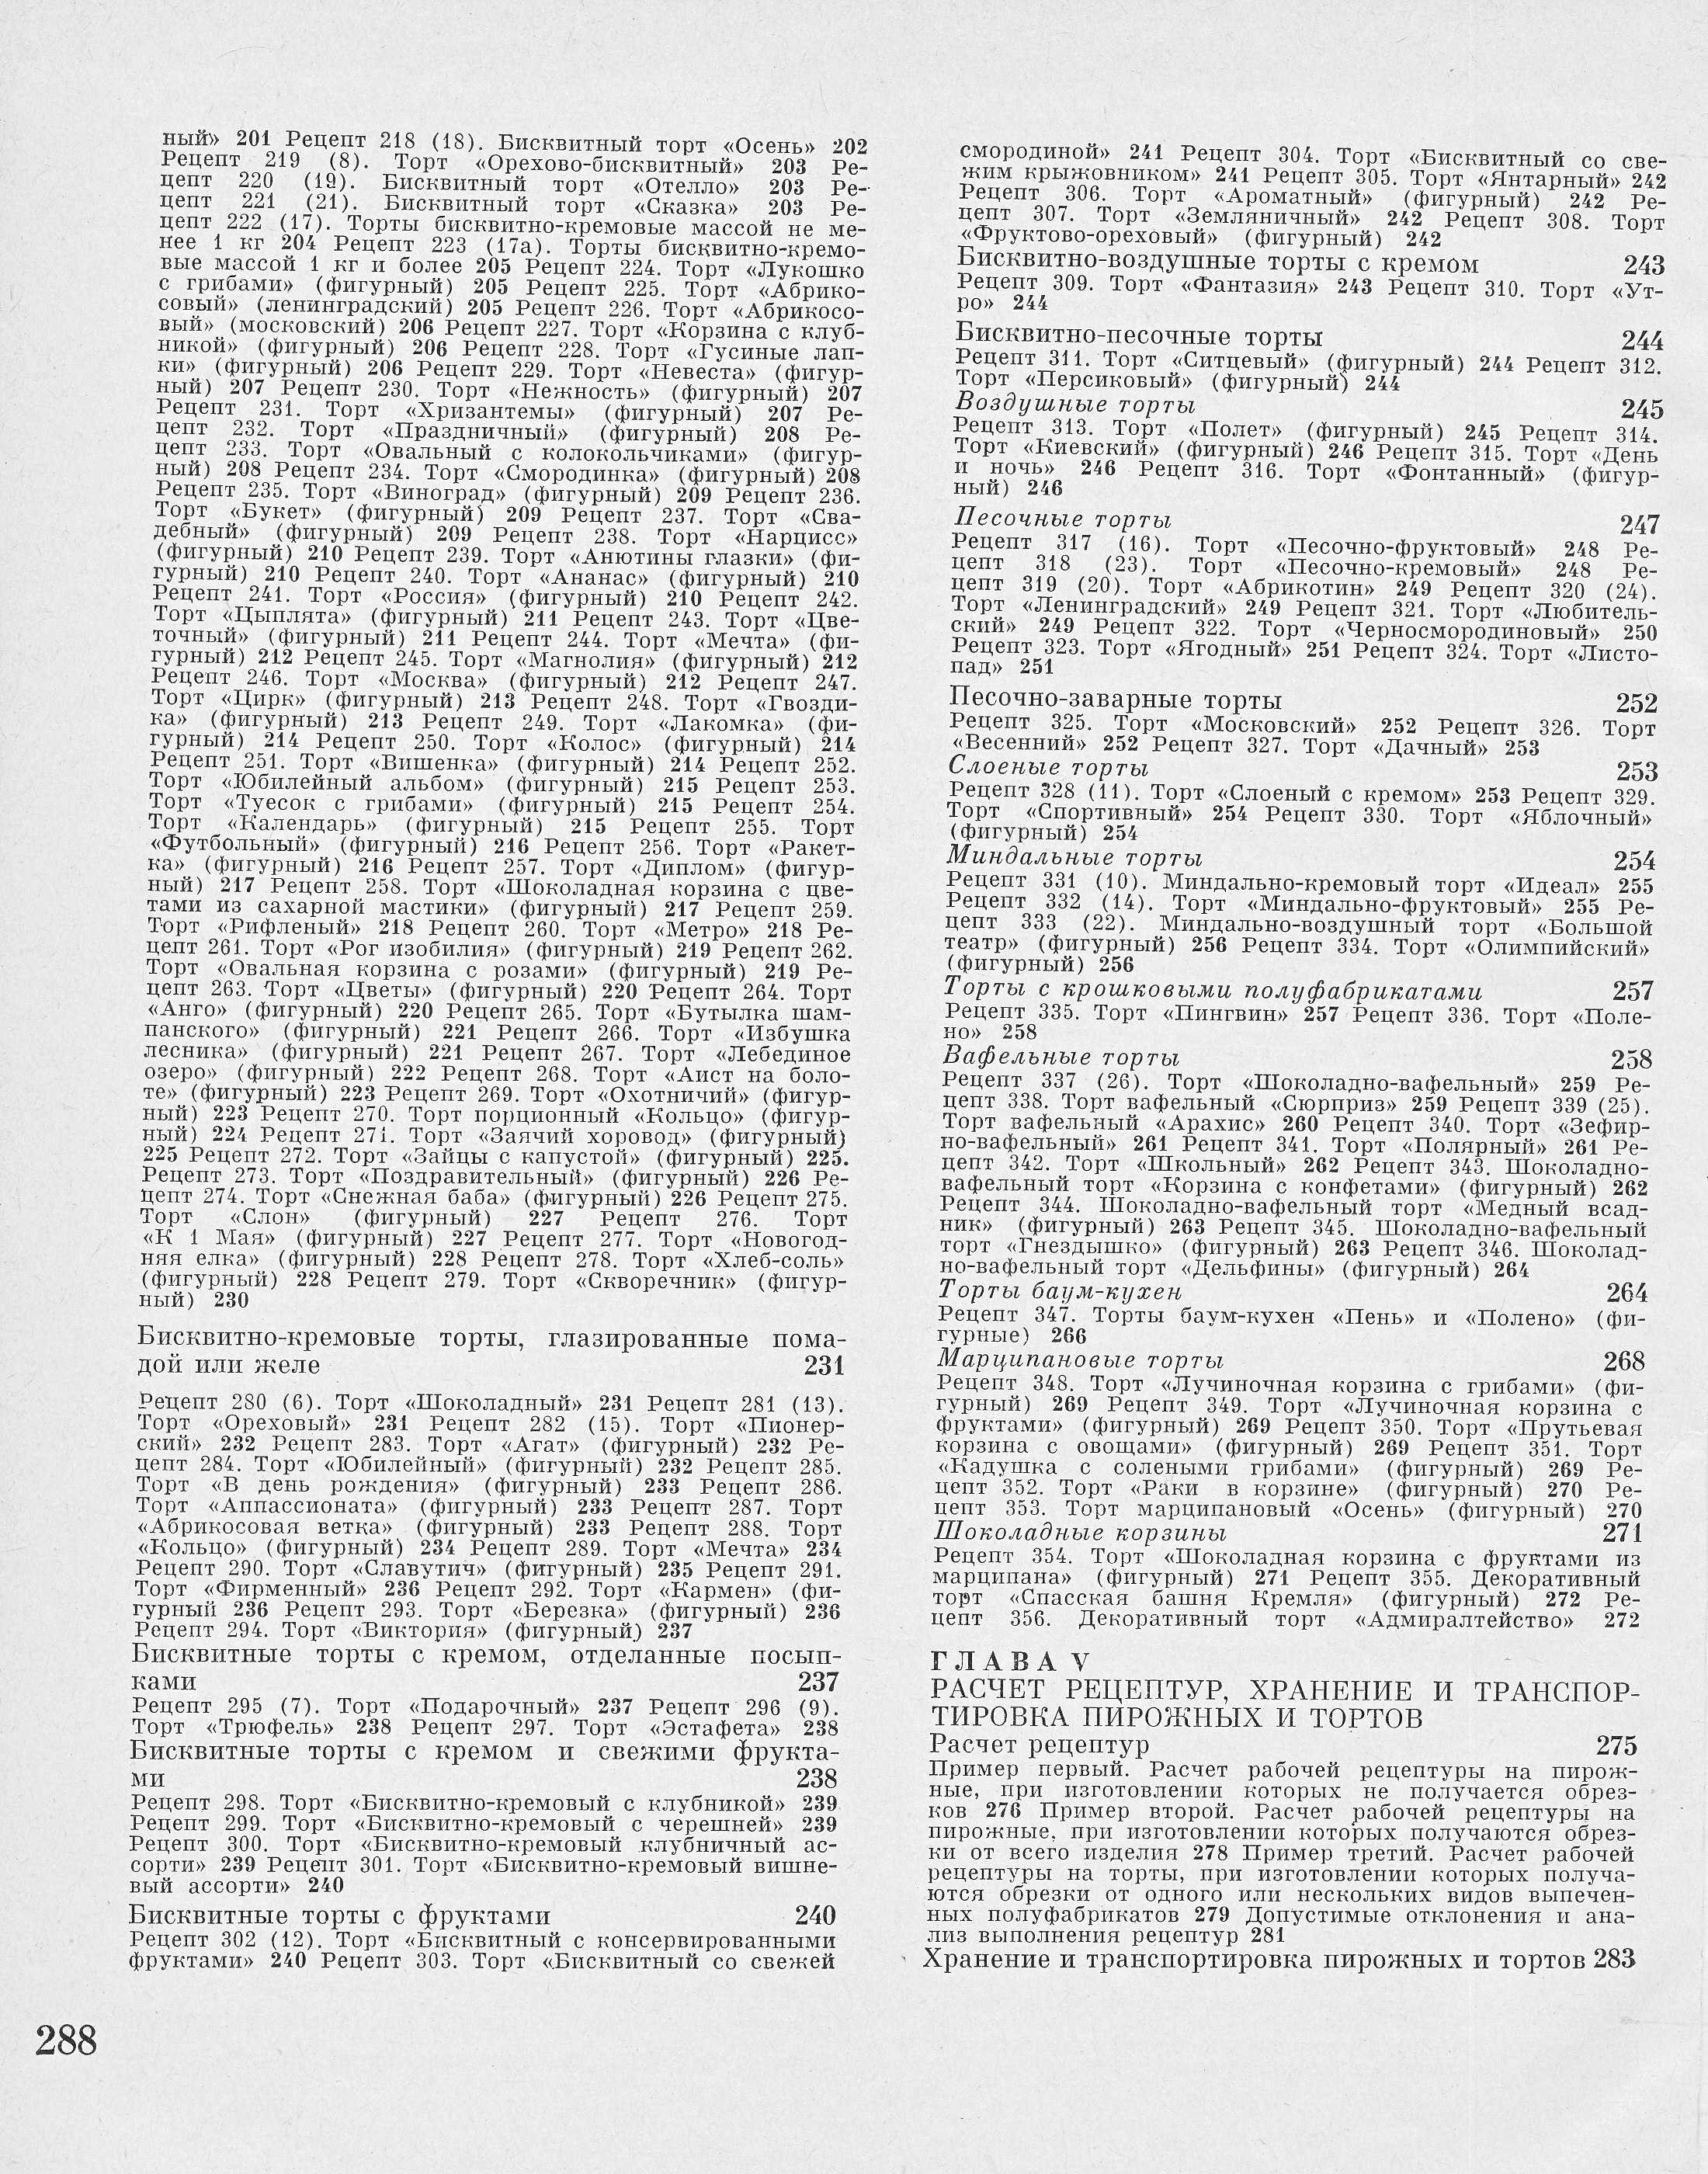 Производство пирожных и тортов П.С. Мархель, Ю.Л. Гопенштейн, С.В. Смелов 1974 г. страница 288